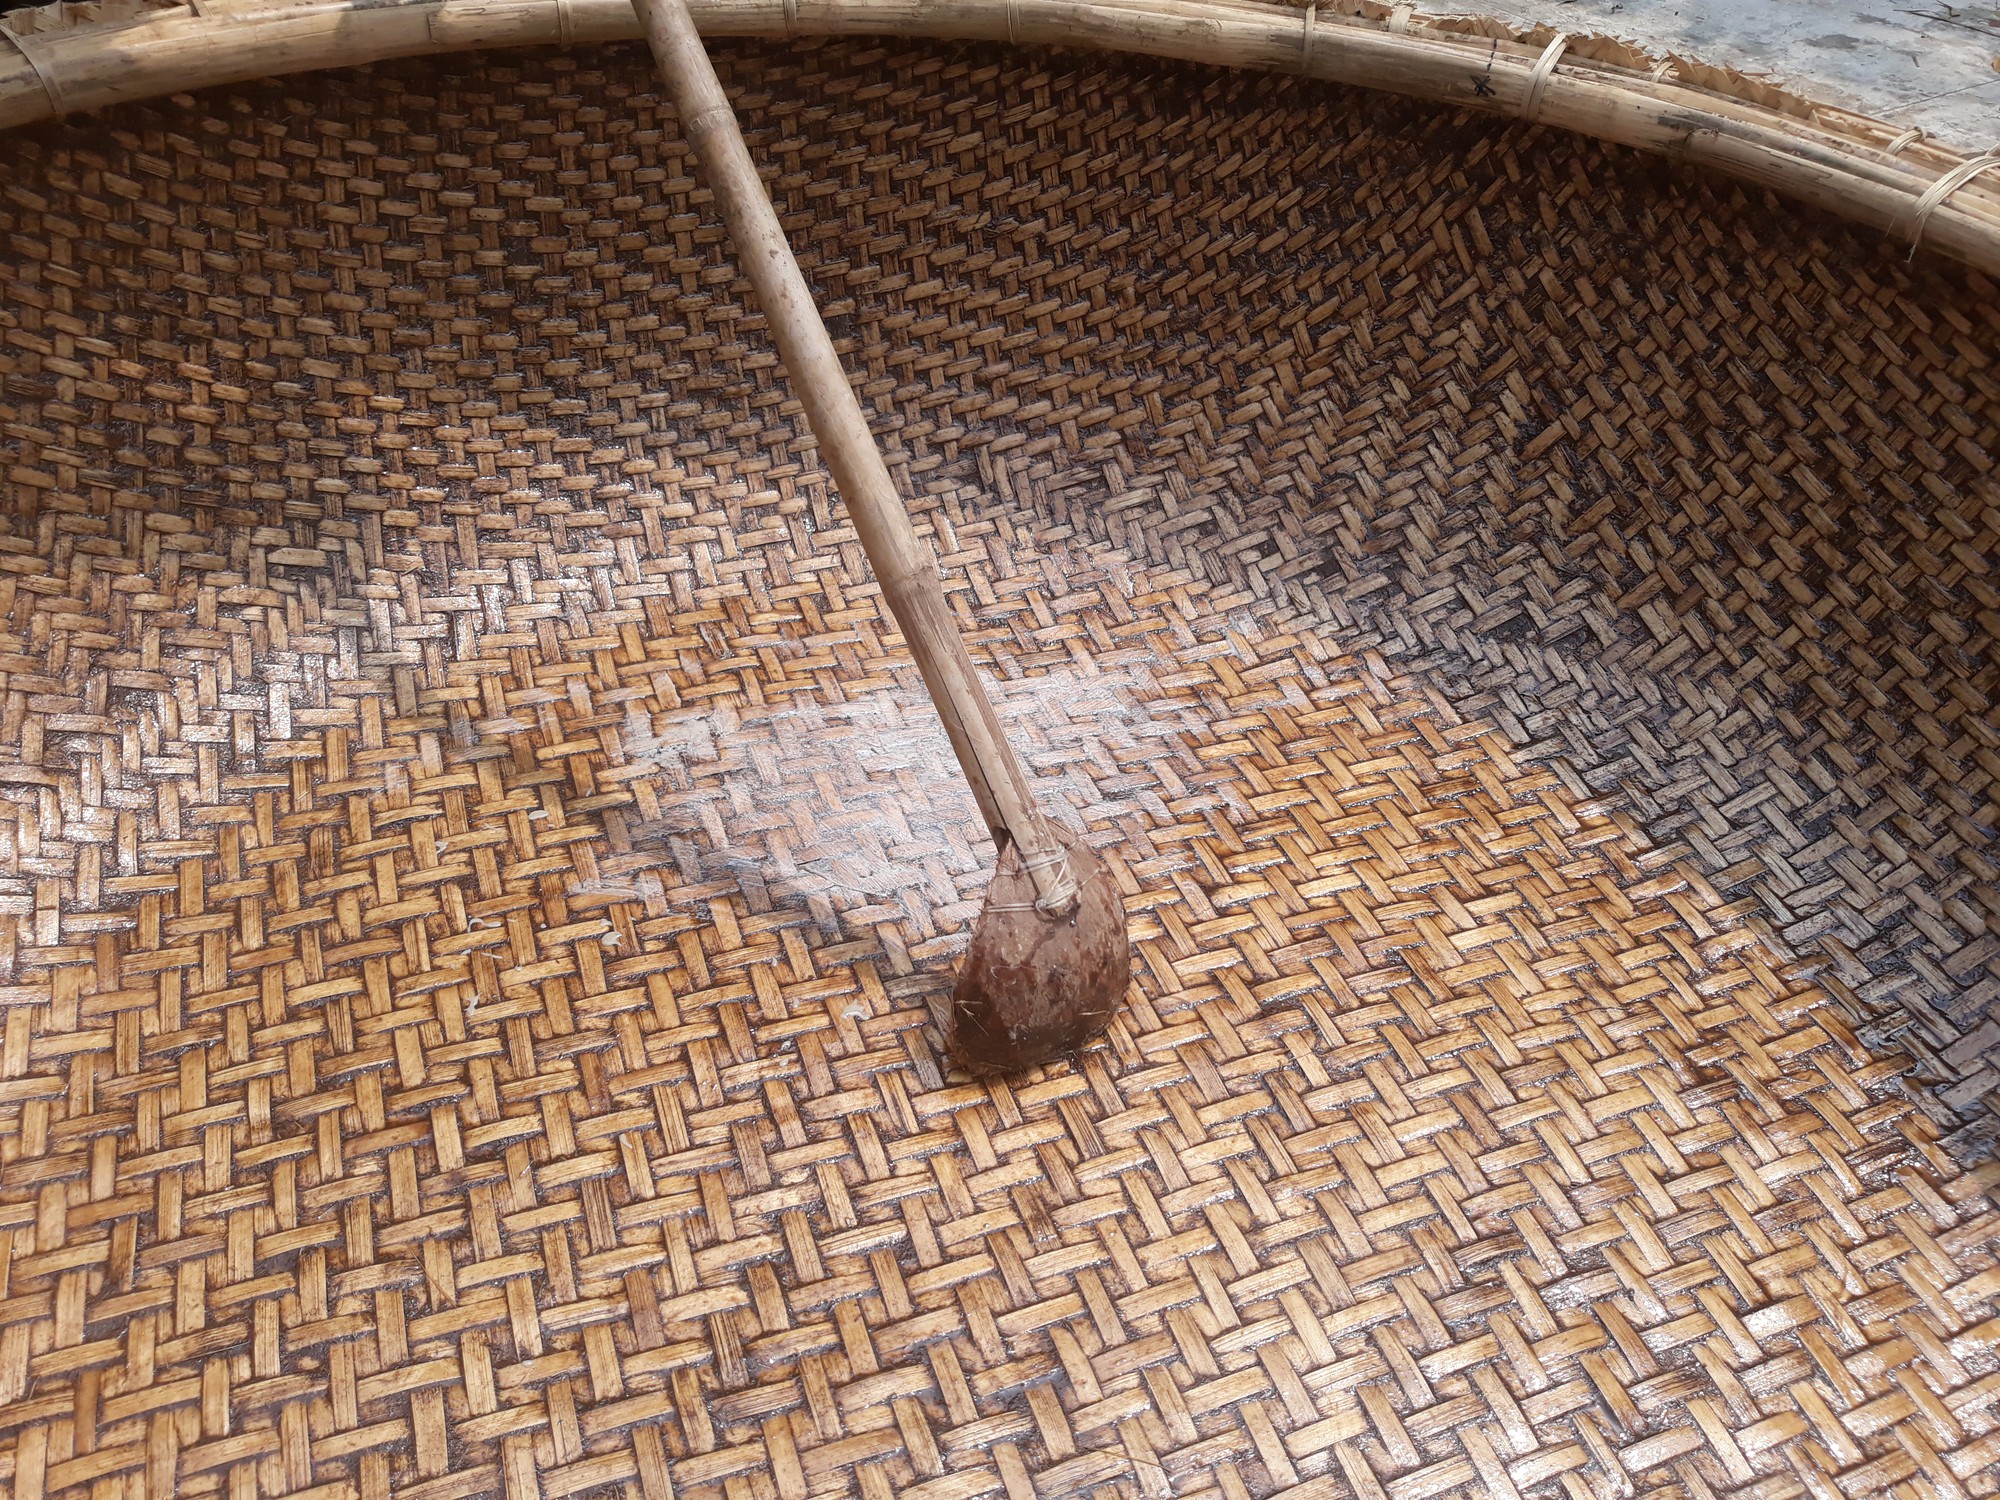 Kỳ công nghề đan thuyền thúng ở xứ Quảng - Ảnh 14.